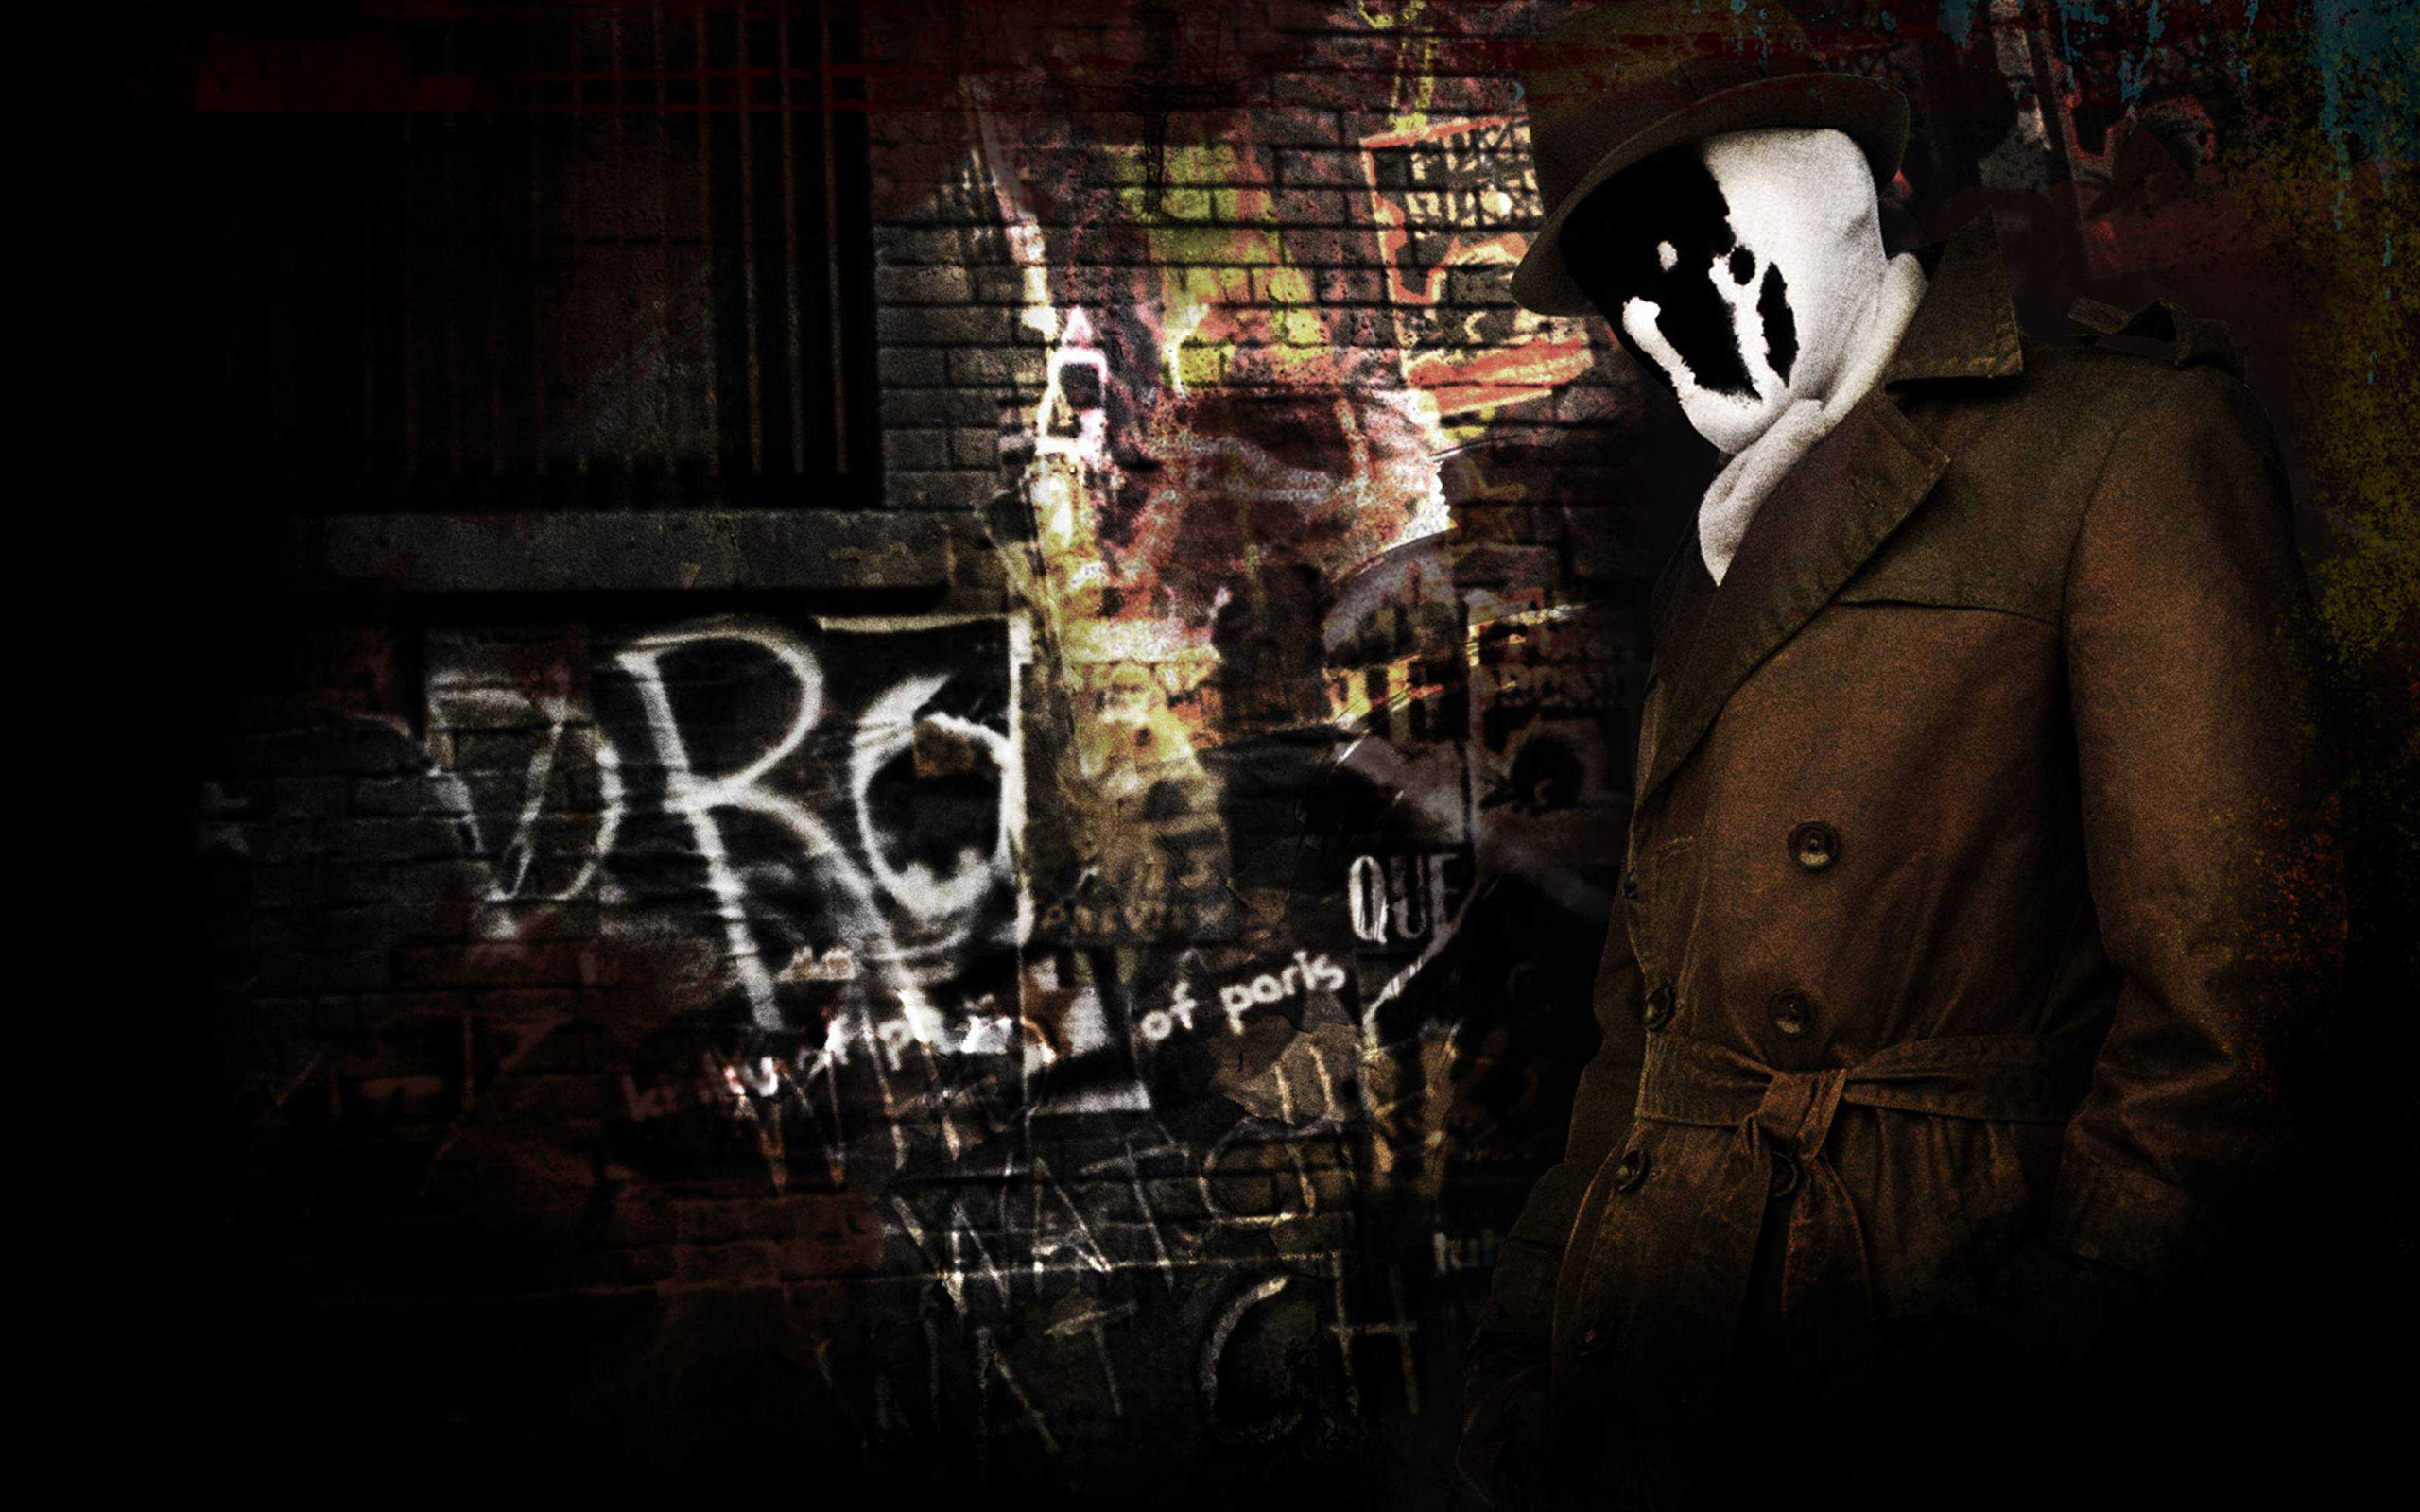 Rorschach character from Watchmen Wallpaper 4k Ultra HD ID6358